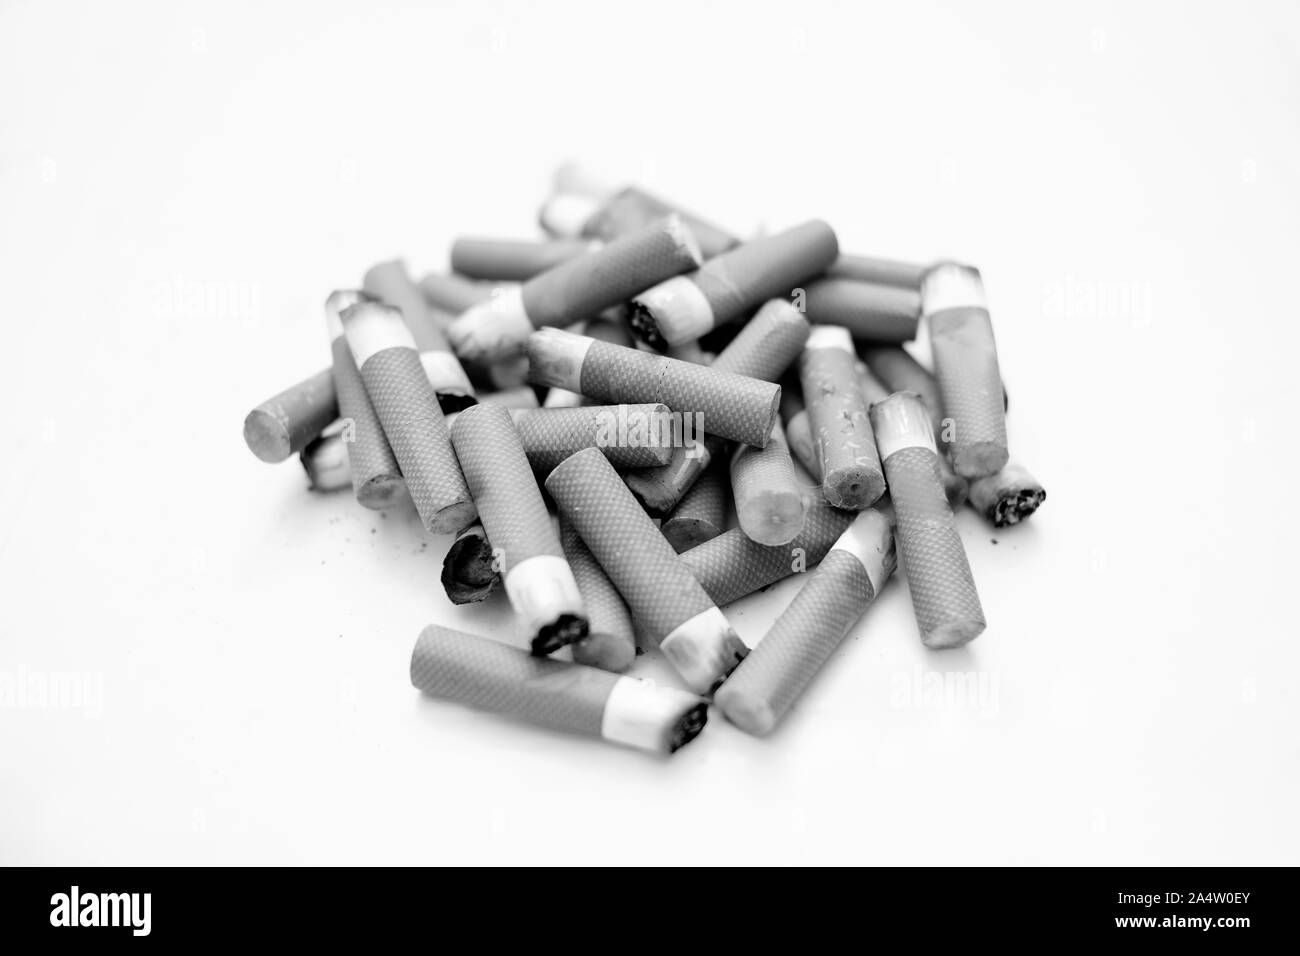 Mozziconi di sigarette isolato, interrompere la dipendenza dal fumo concetto, insalubri inquinamento, BW Foto Stock